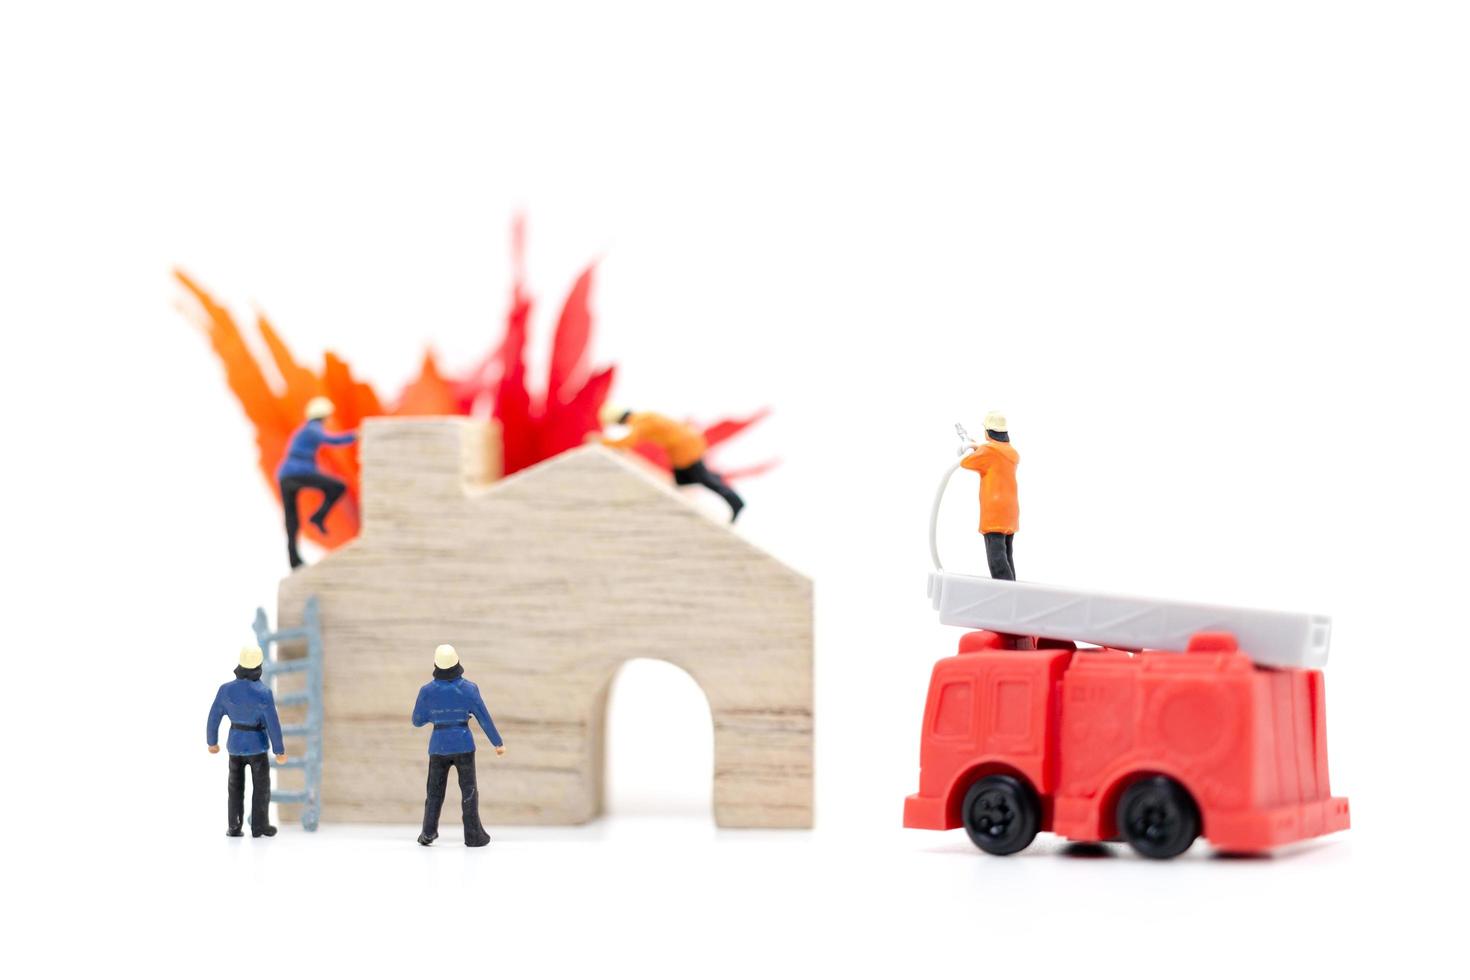 Les pompiers miniatures s'occupant d'une urgence incendie dans une maison en bois photo